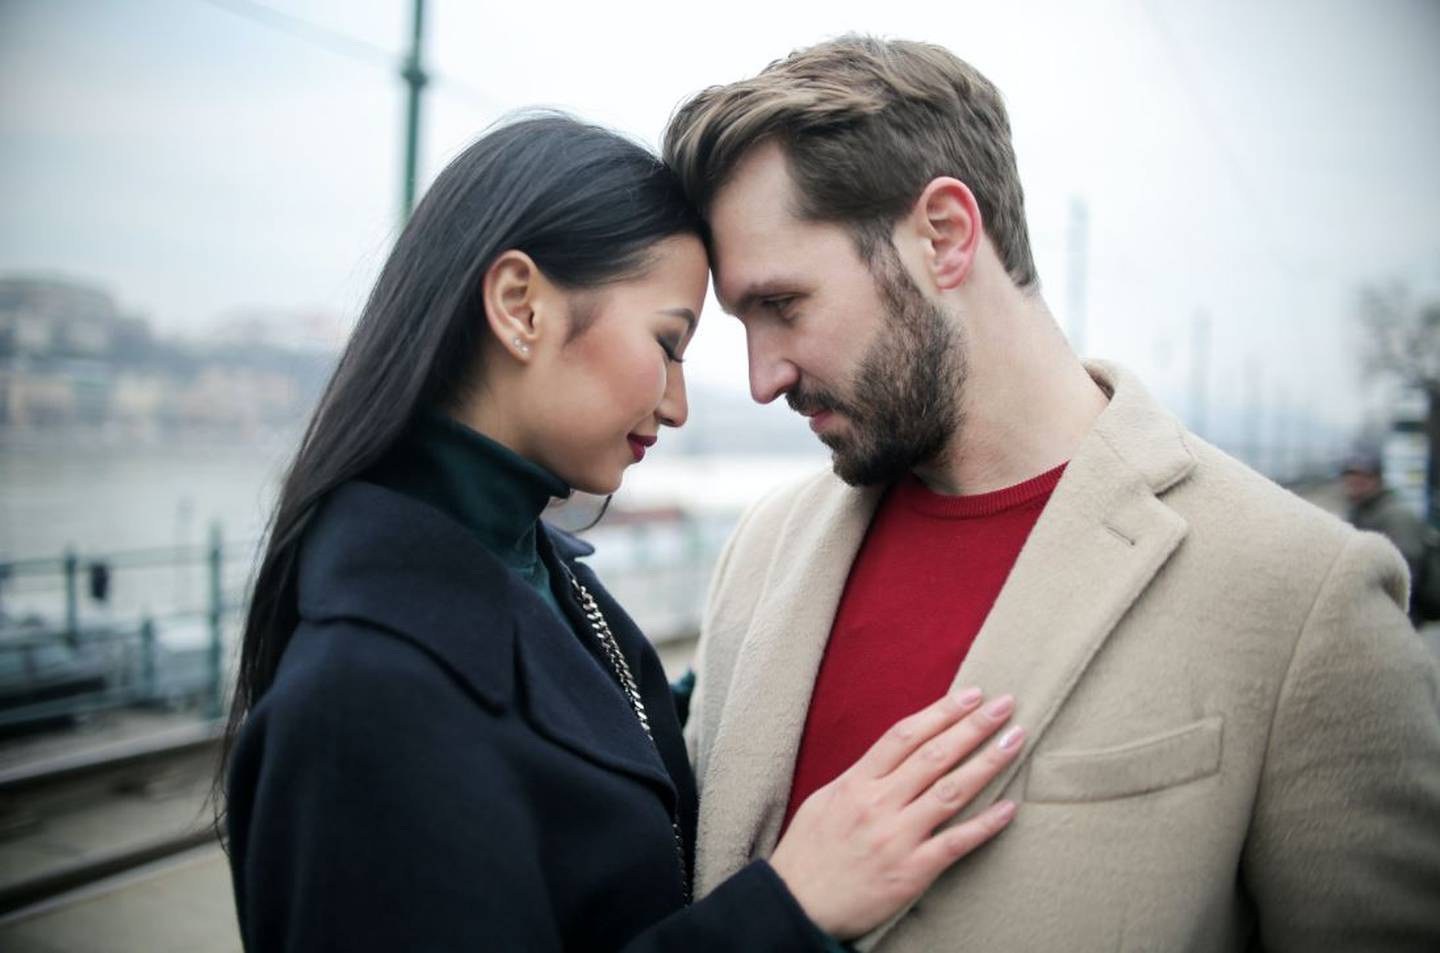 Una pareja enamorada demostrando su amor en público